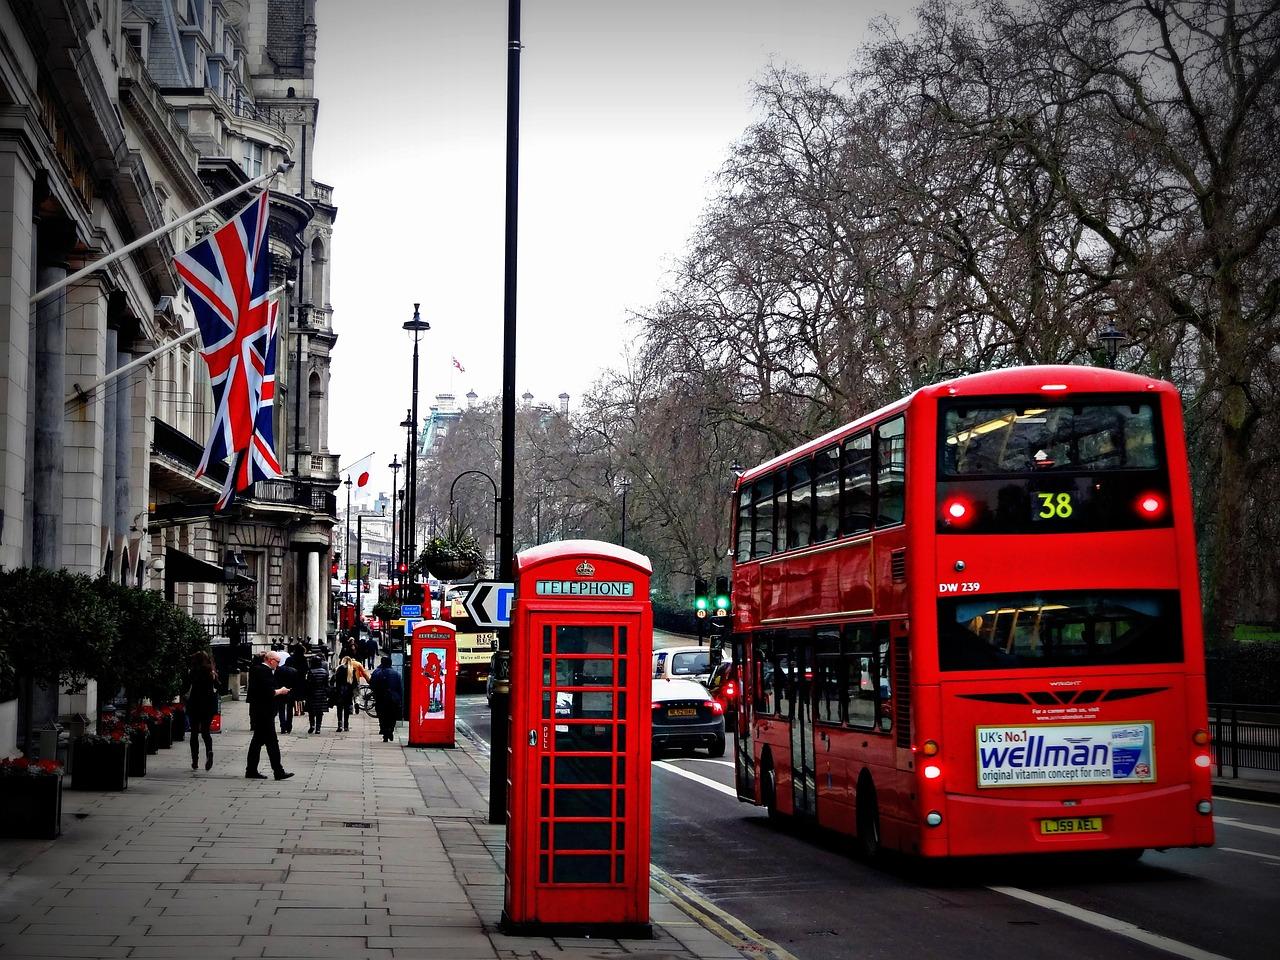 Intercâmbio gratuito | Imagem mostra um clássico ônibus de Londres em uma rua. Há bandeiras do Reino Unido, árvores e o céu de um dia cinzento. Além disso, há duas cabines inglesas e pessoas caminhando.